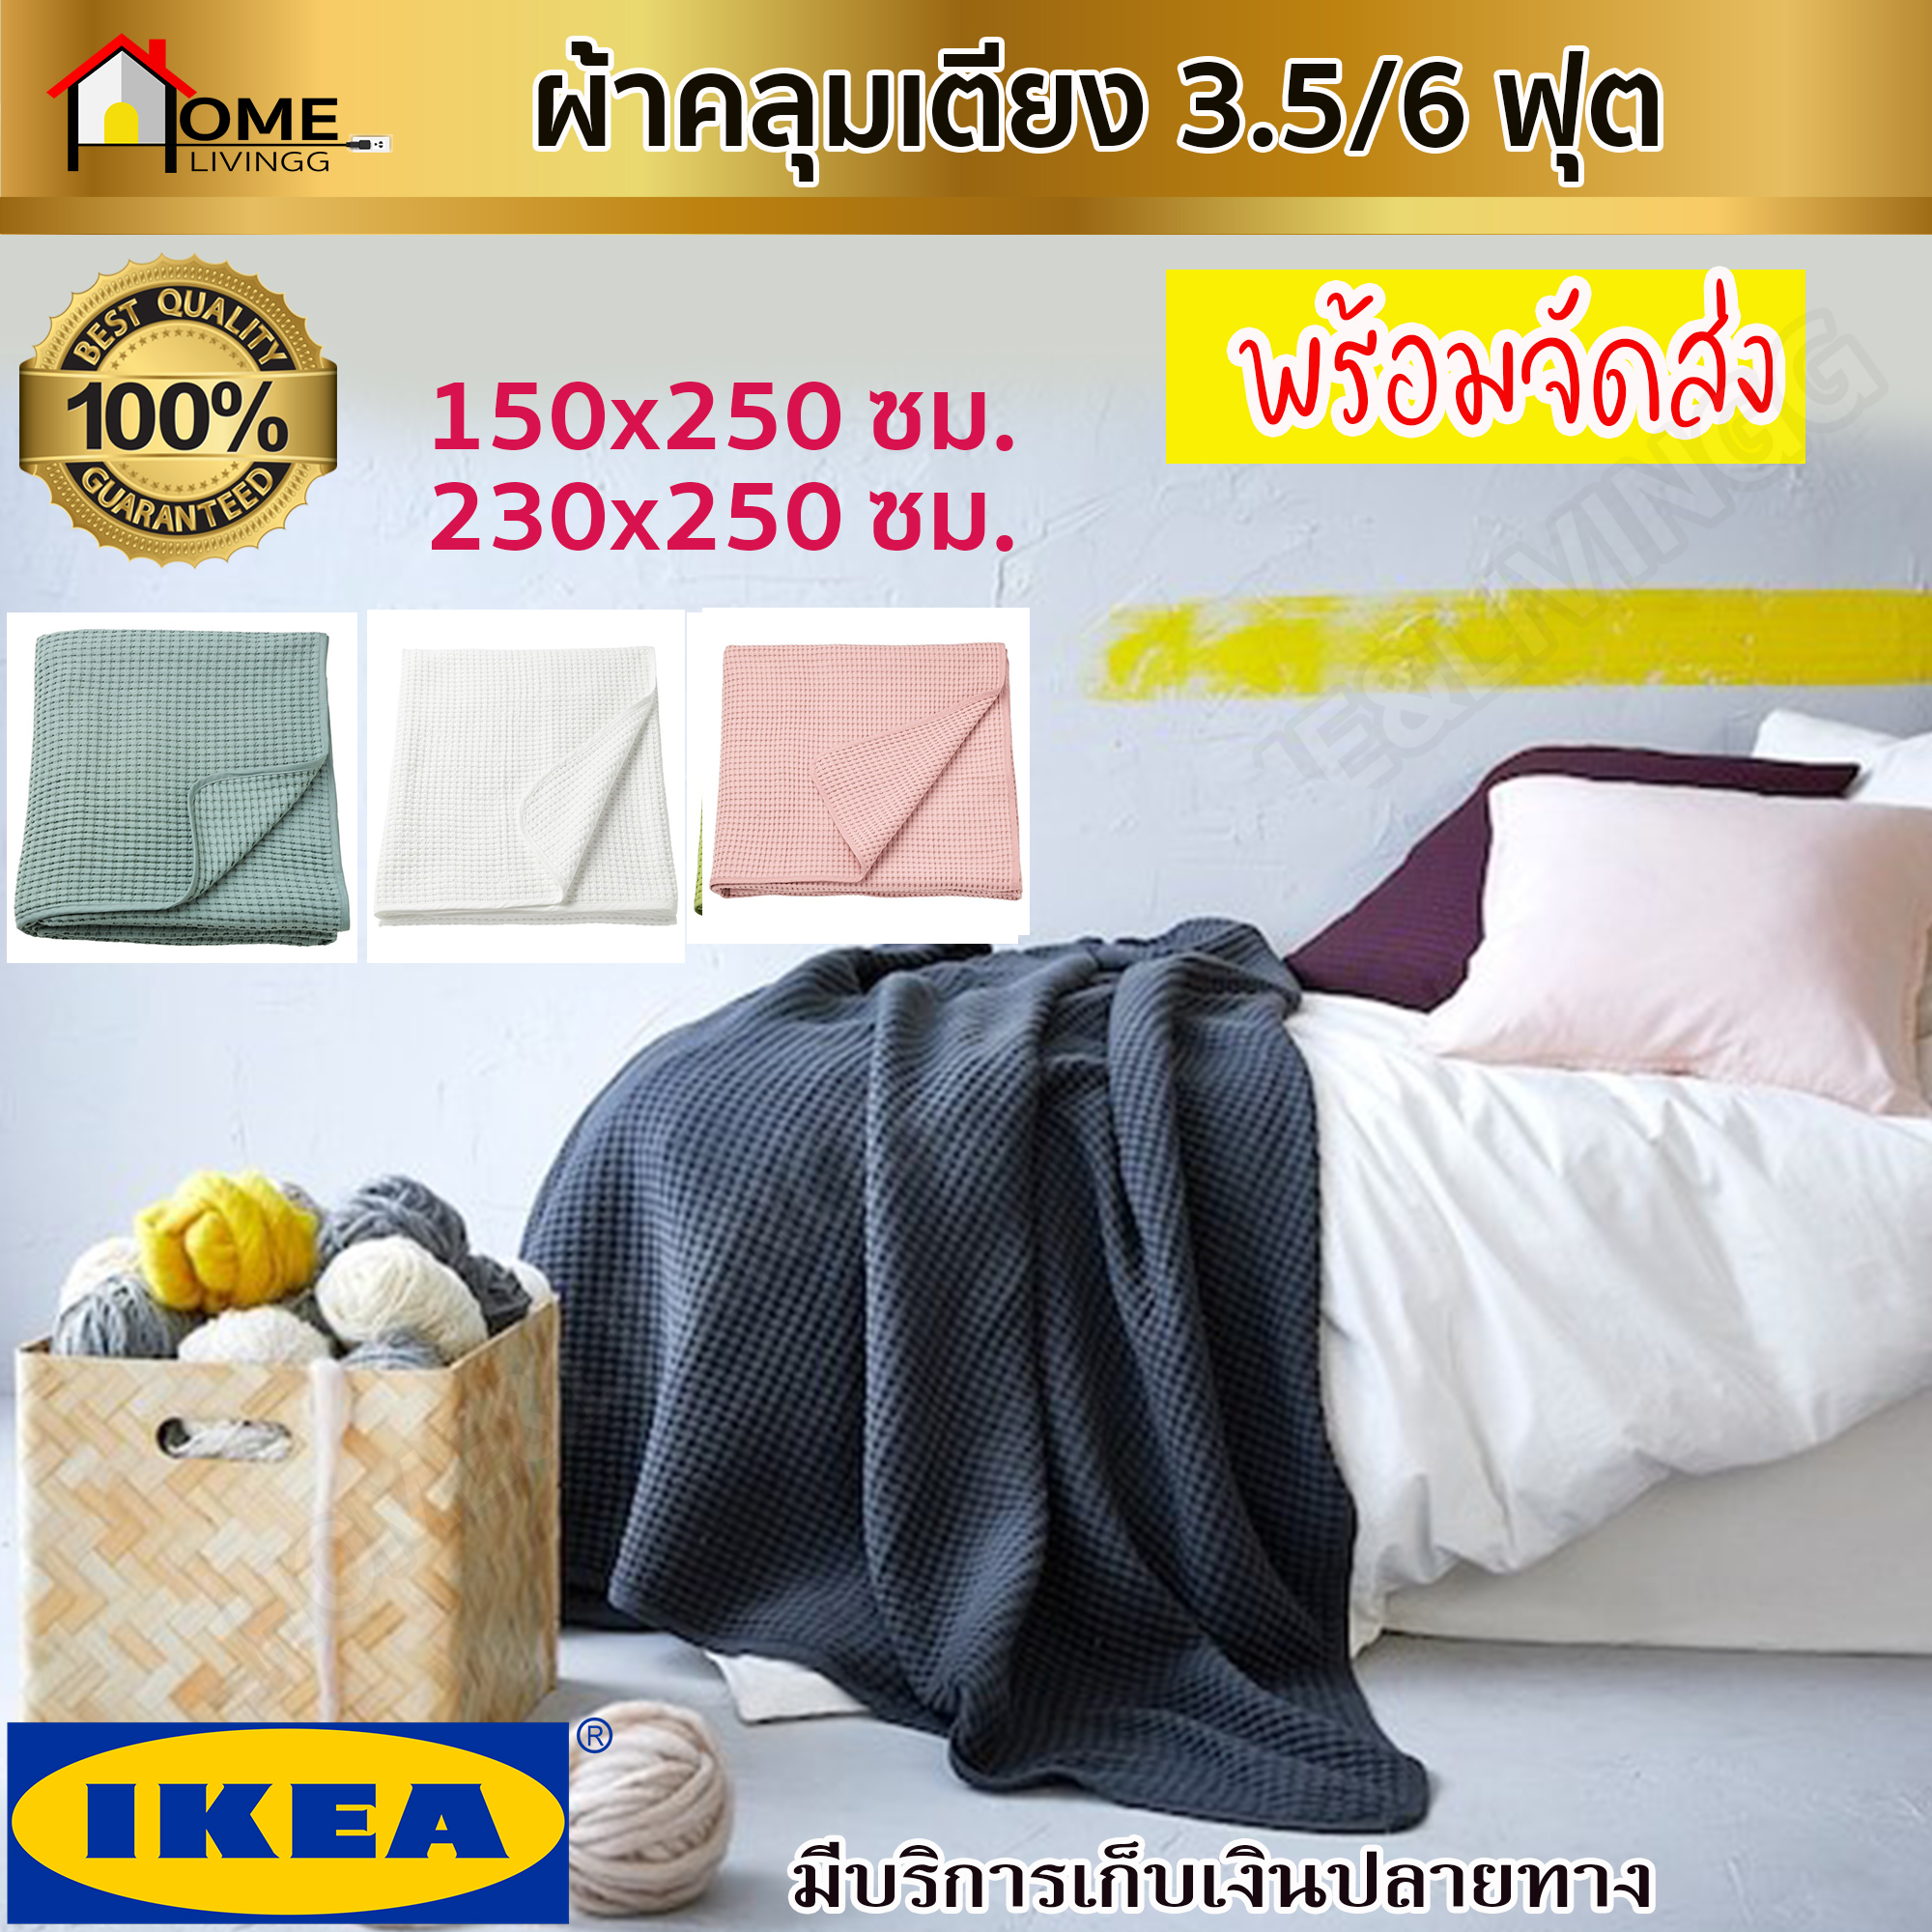 IKEA ของแท้ VÅRELD วัวเรลด์ ผ้าคลุมเตียง, วัสดุ ผ้าฝ้าย 100%  3.5 ฟุต และ 6 ฟุต 4 สีสวยโดนใจ